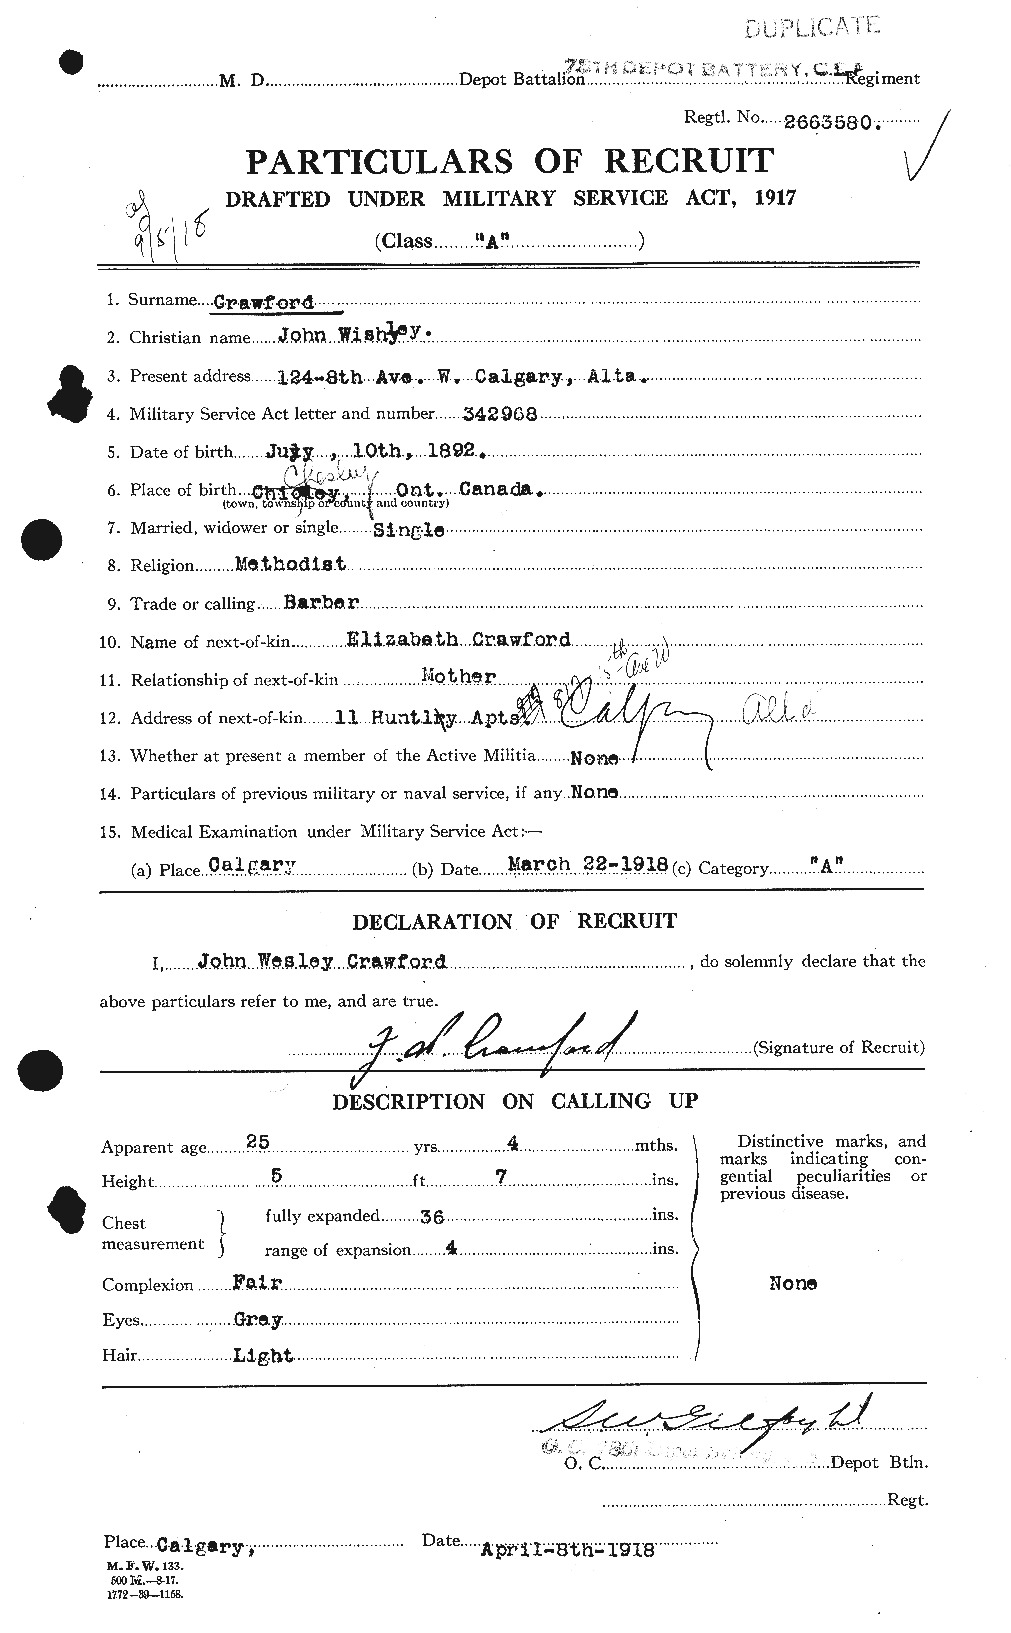 Dossiers du Personnel de la Première Guerre mondiale - CEC 061816a